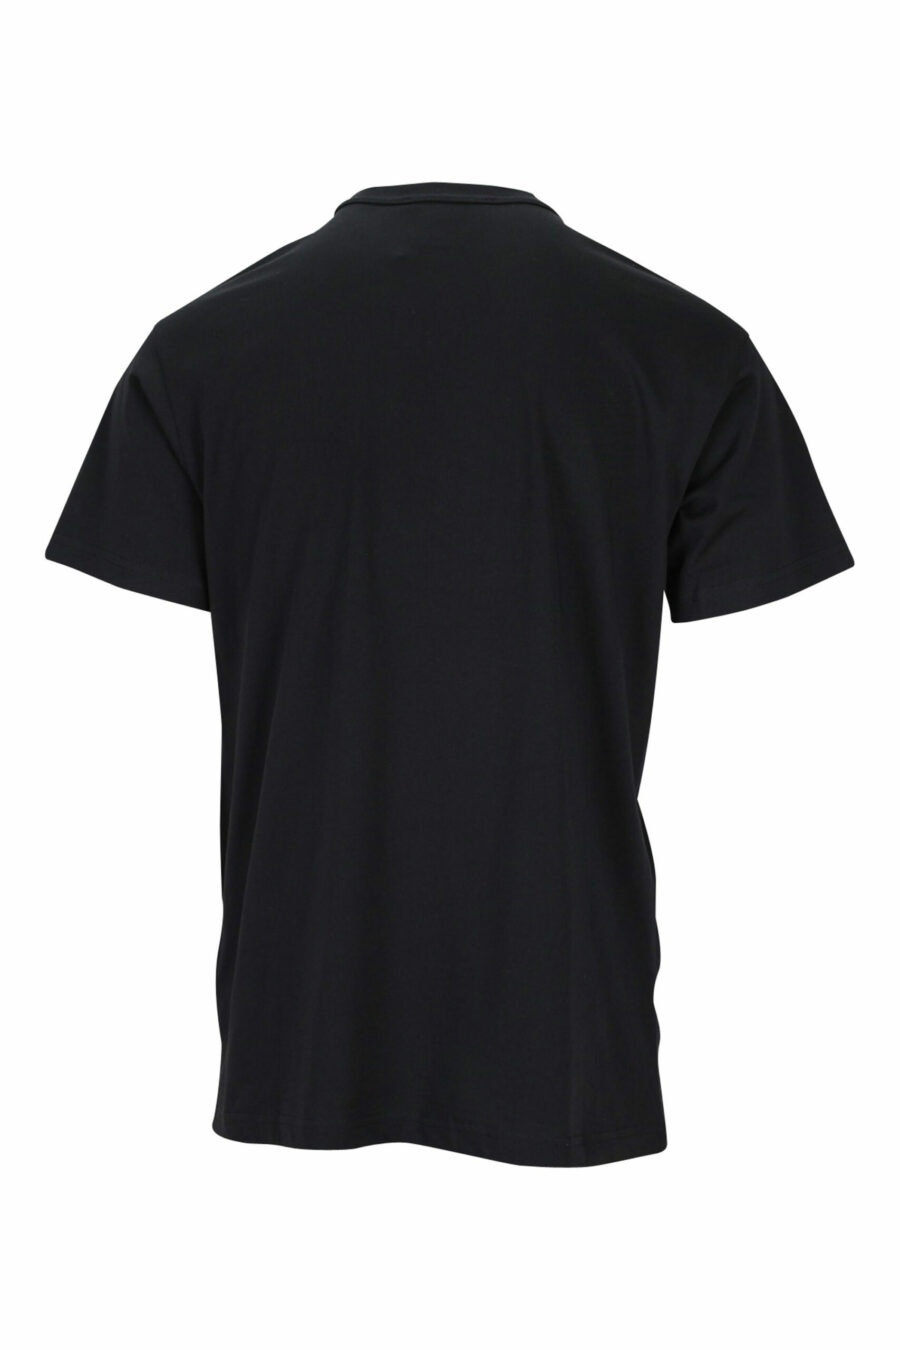 T-shirt preta com maxilogue clássico em contraste - 8052019457698 1 scaled